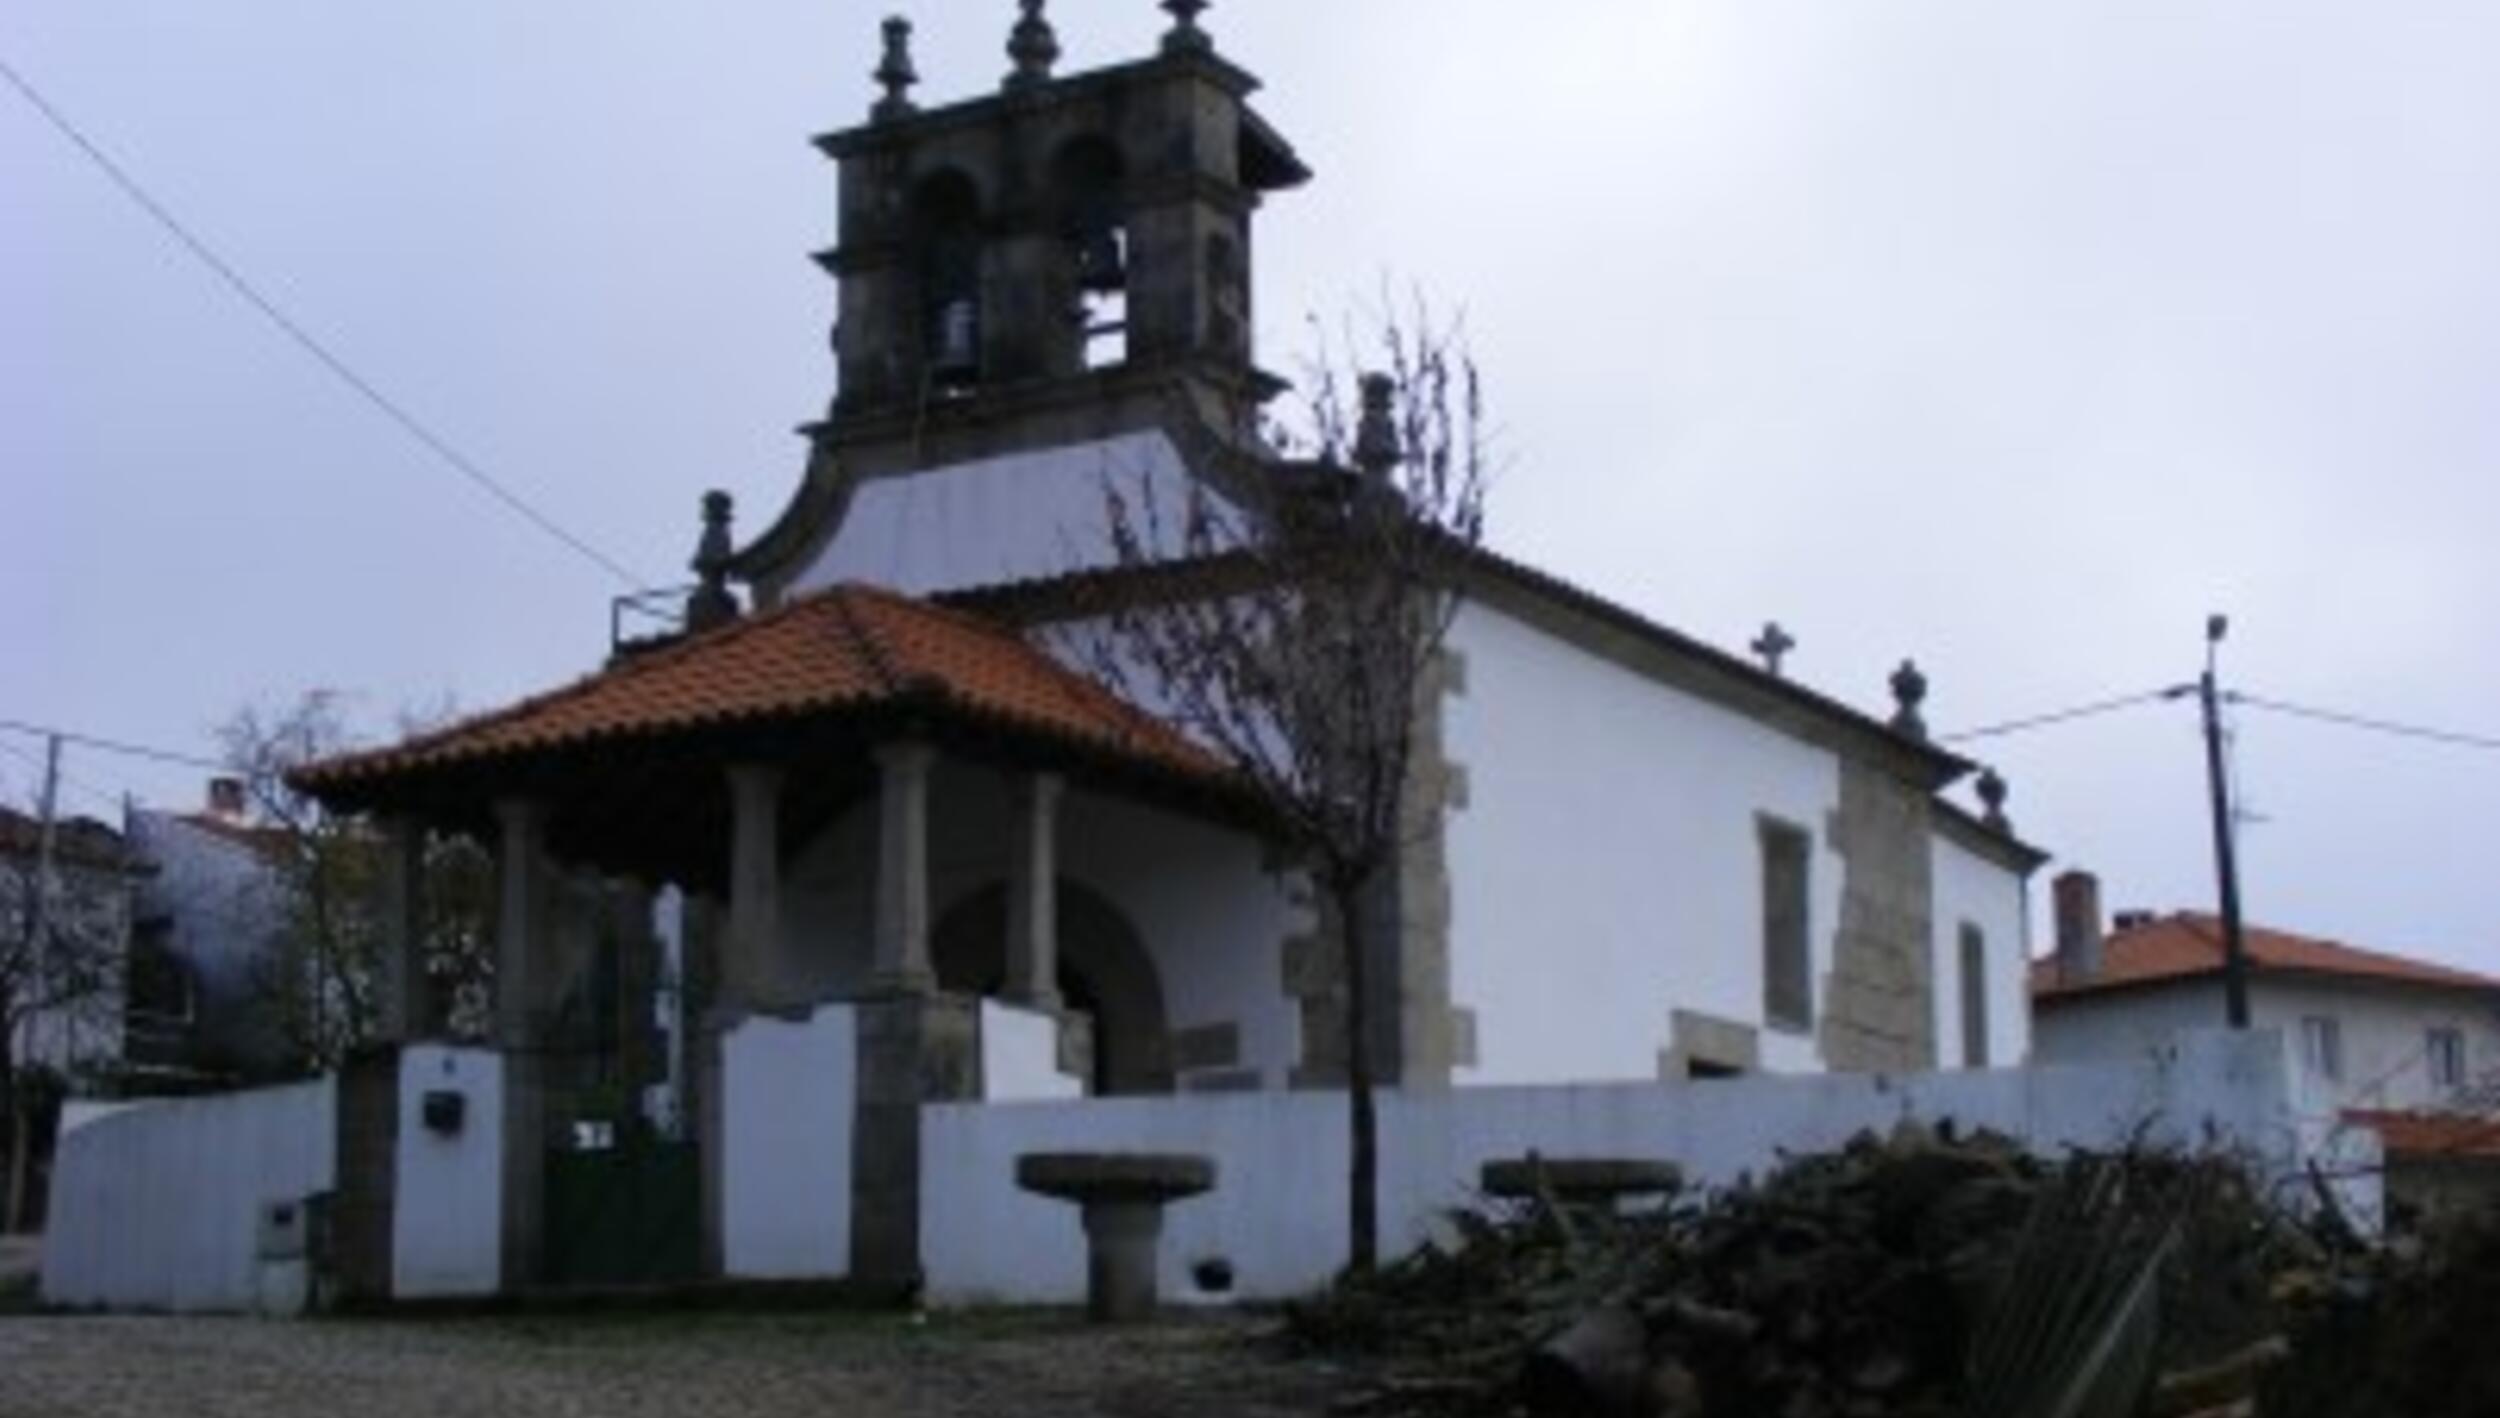 Igreja de Cova da Lua / Igreja de Santa Columba